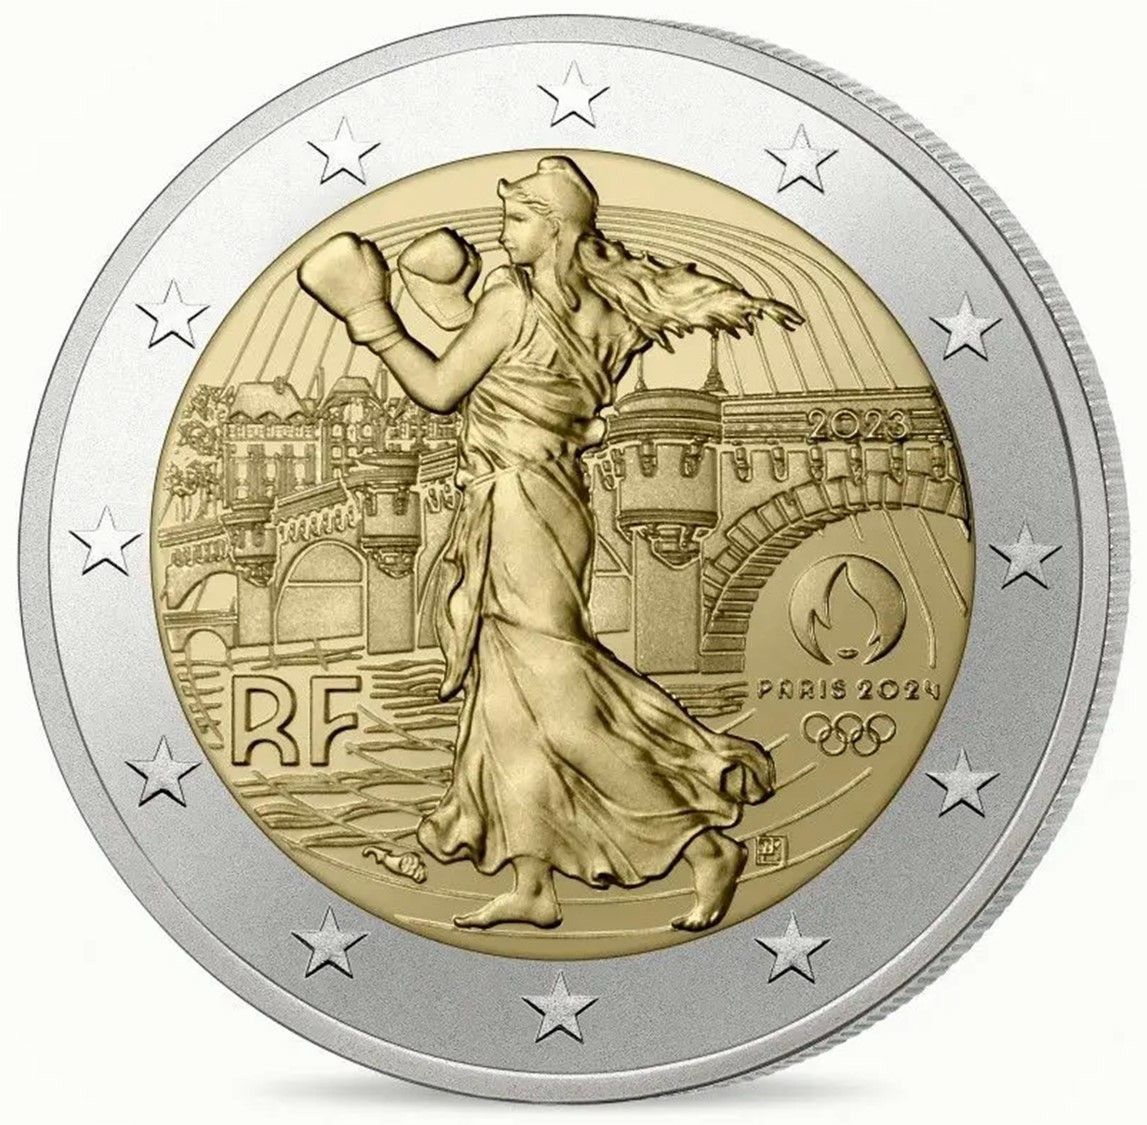 2023 フランス パリ2024 オリンピック開催記念 ブリスターパック入り 2ユーロ 硬貨の5色セット